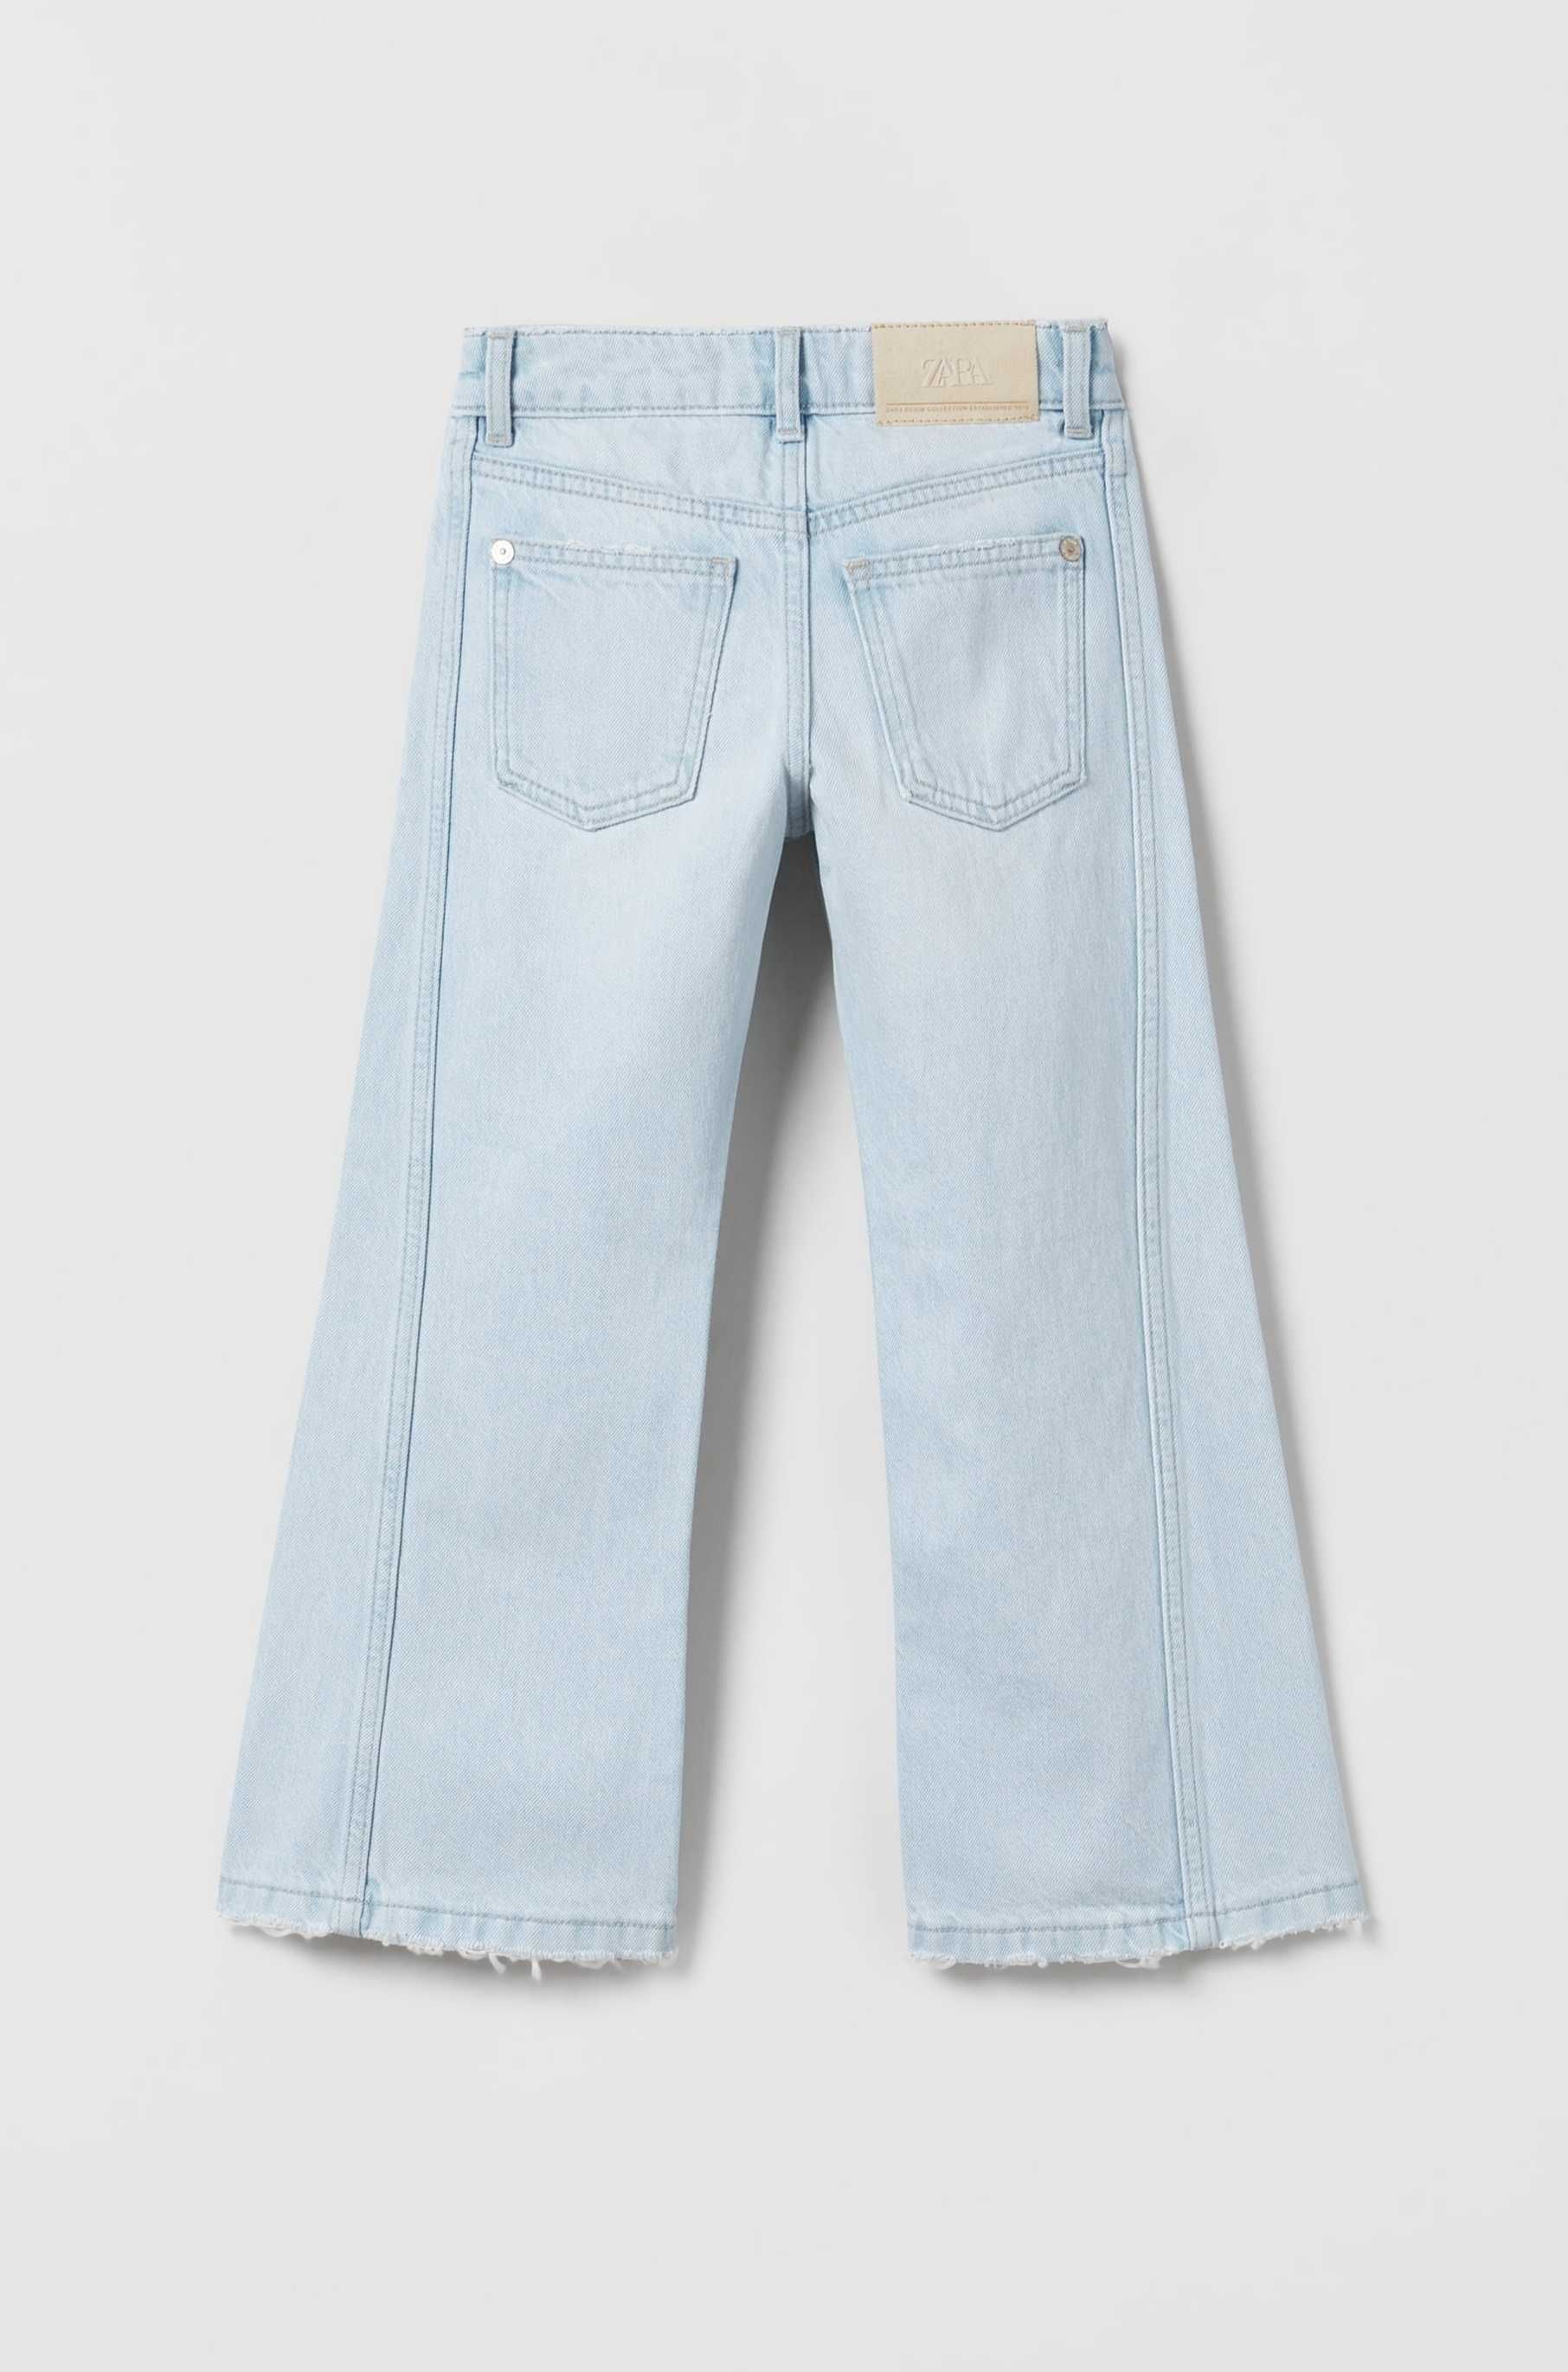 широкі джинси буткат, джинсові штани, широкие джинсы буткат зара zara